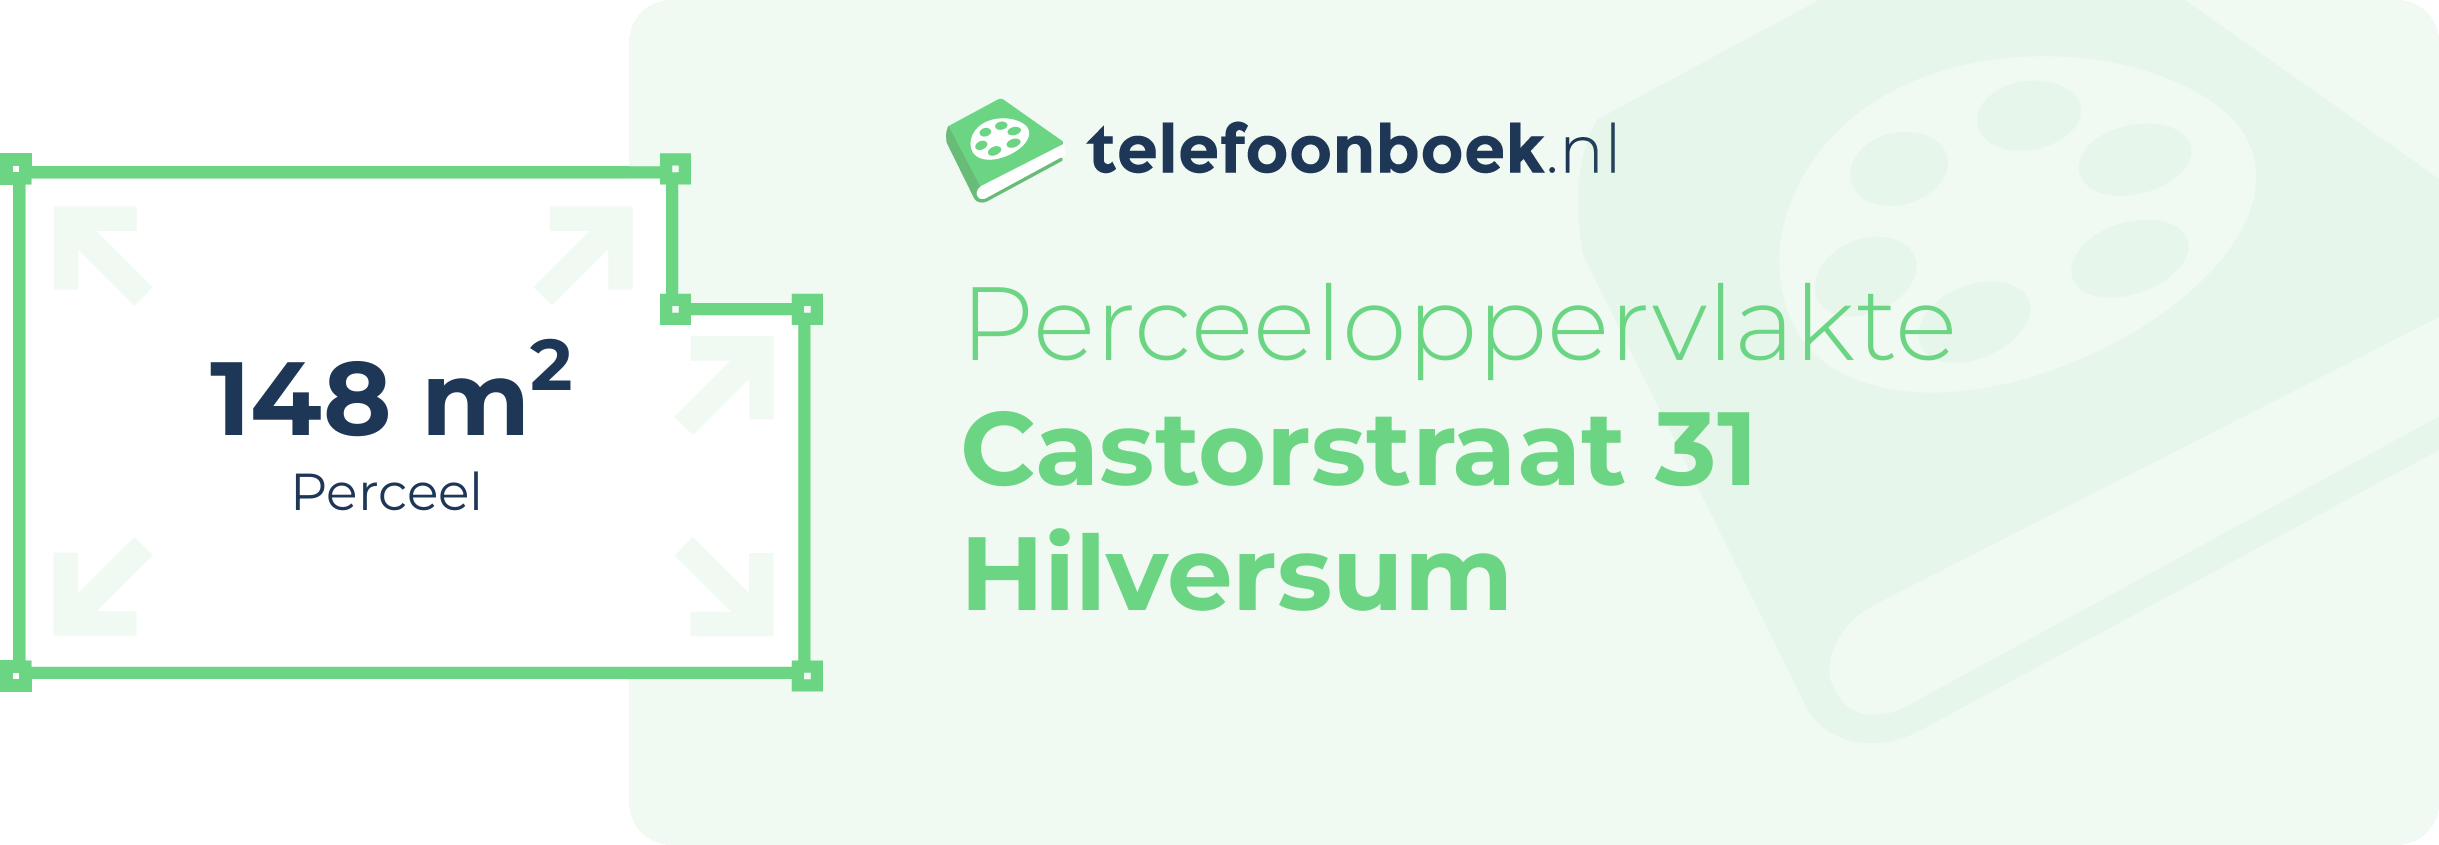 Perceeloppervlakte Castorstraat 31 Hilversum